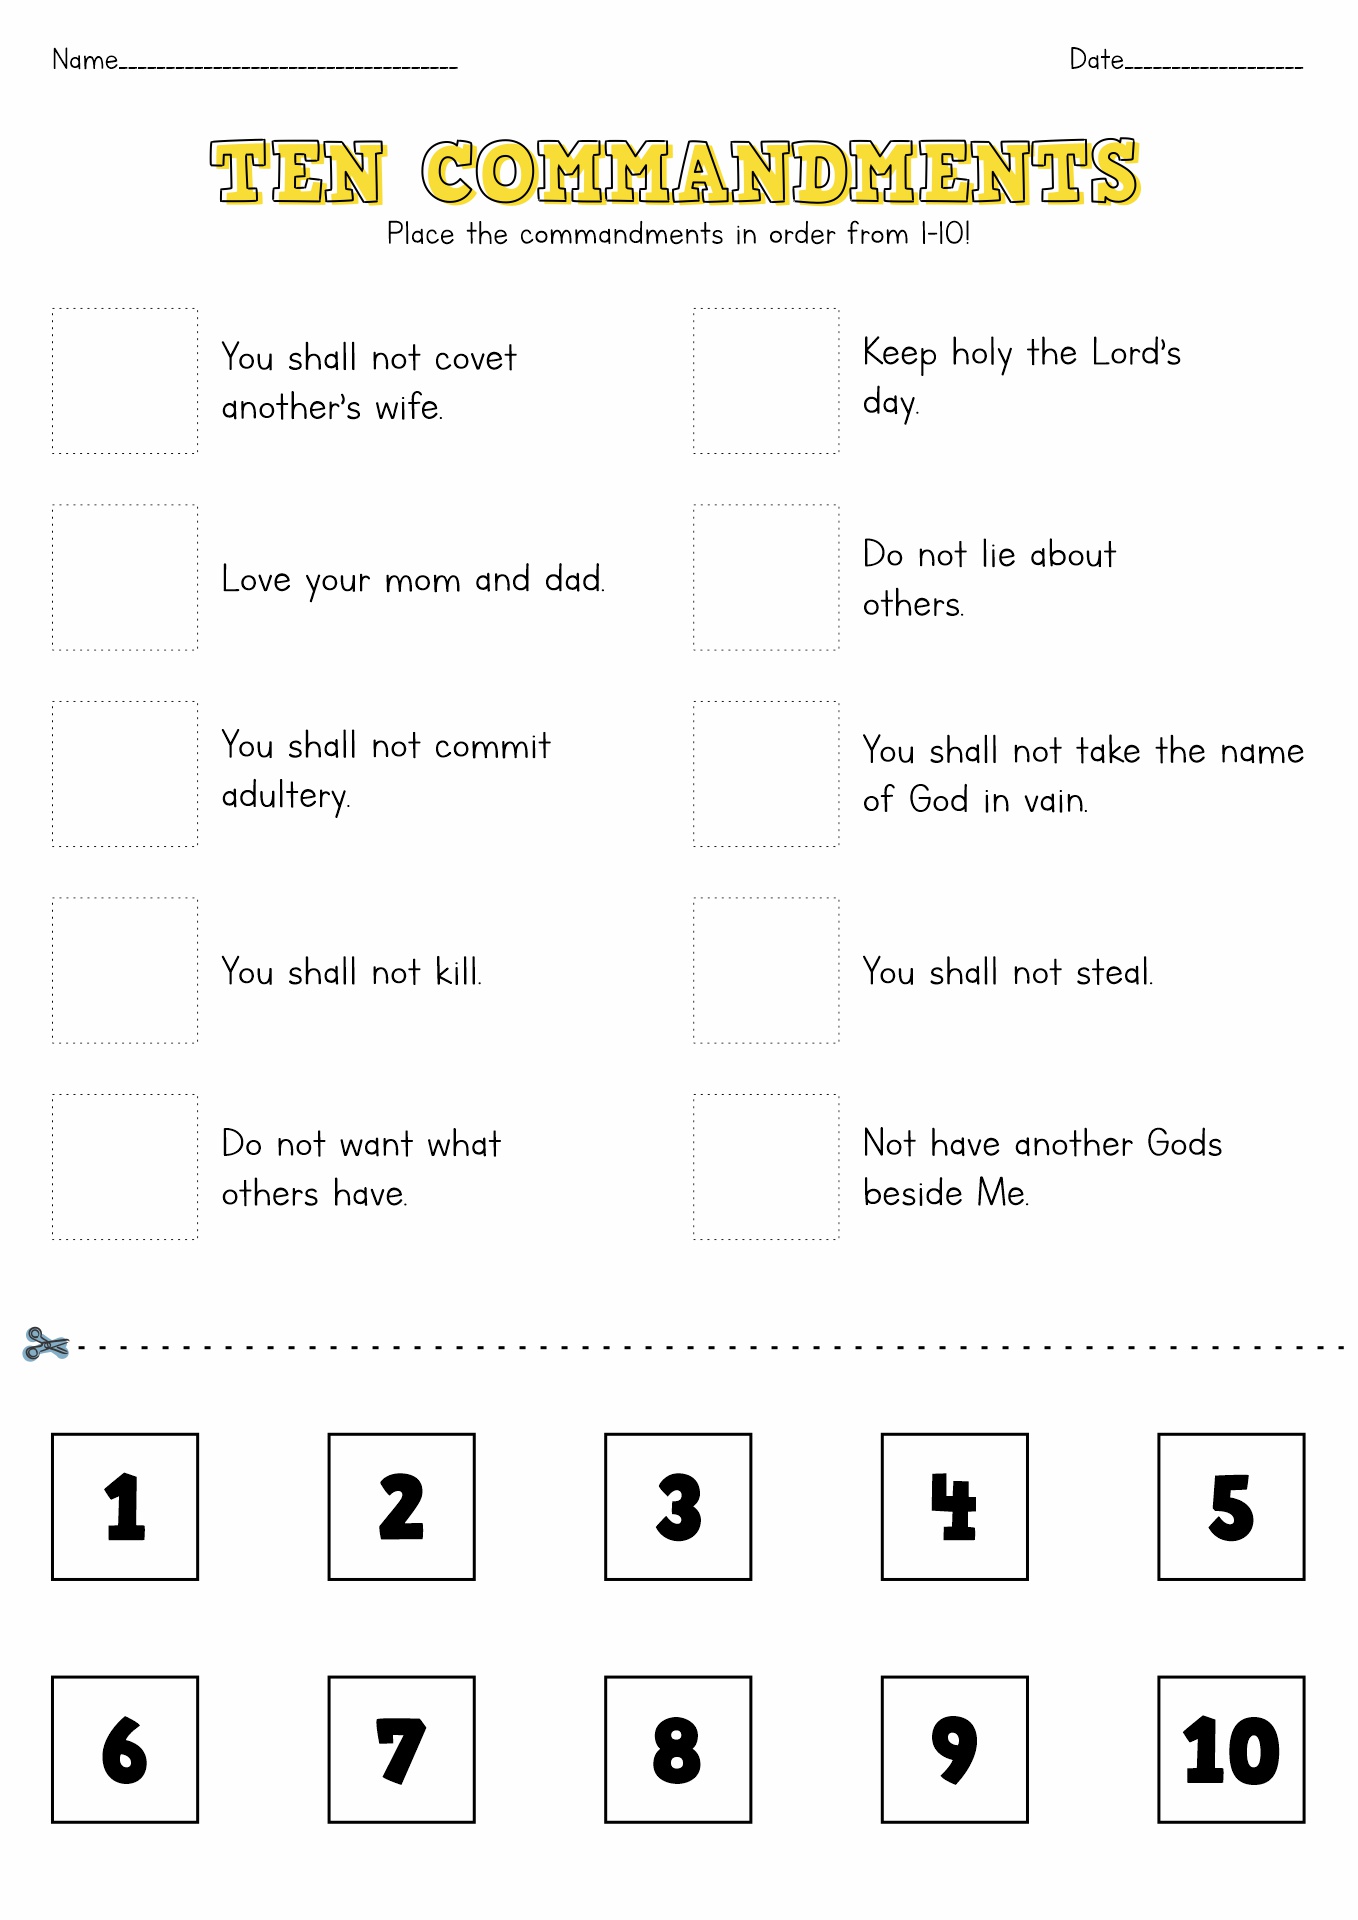 10-commandments-printable-worksheets-free-doughnuts-10-commandments